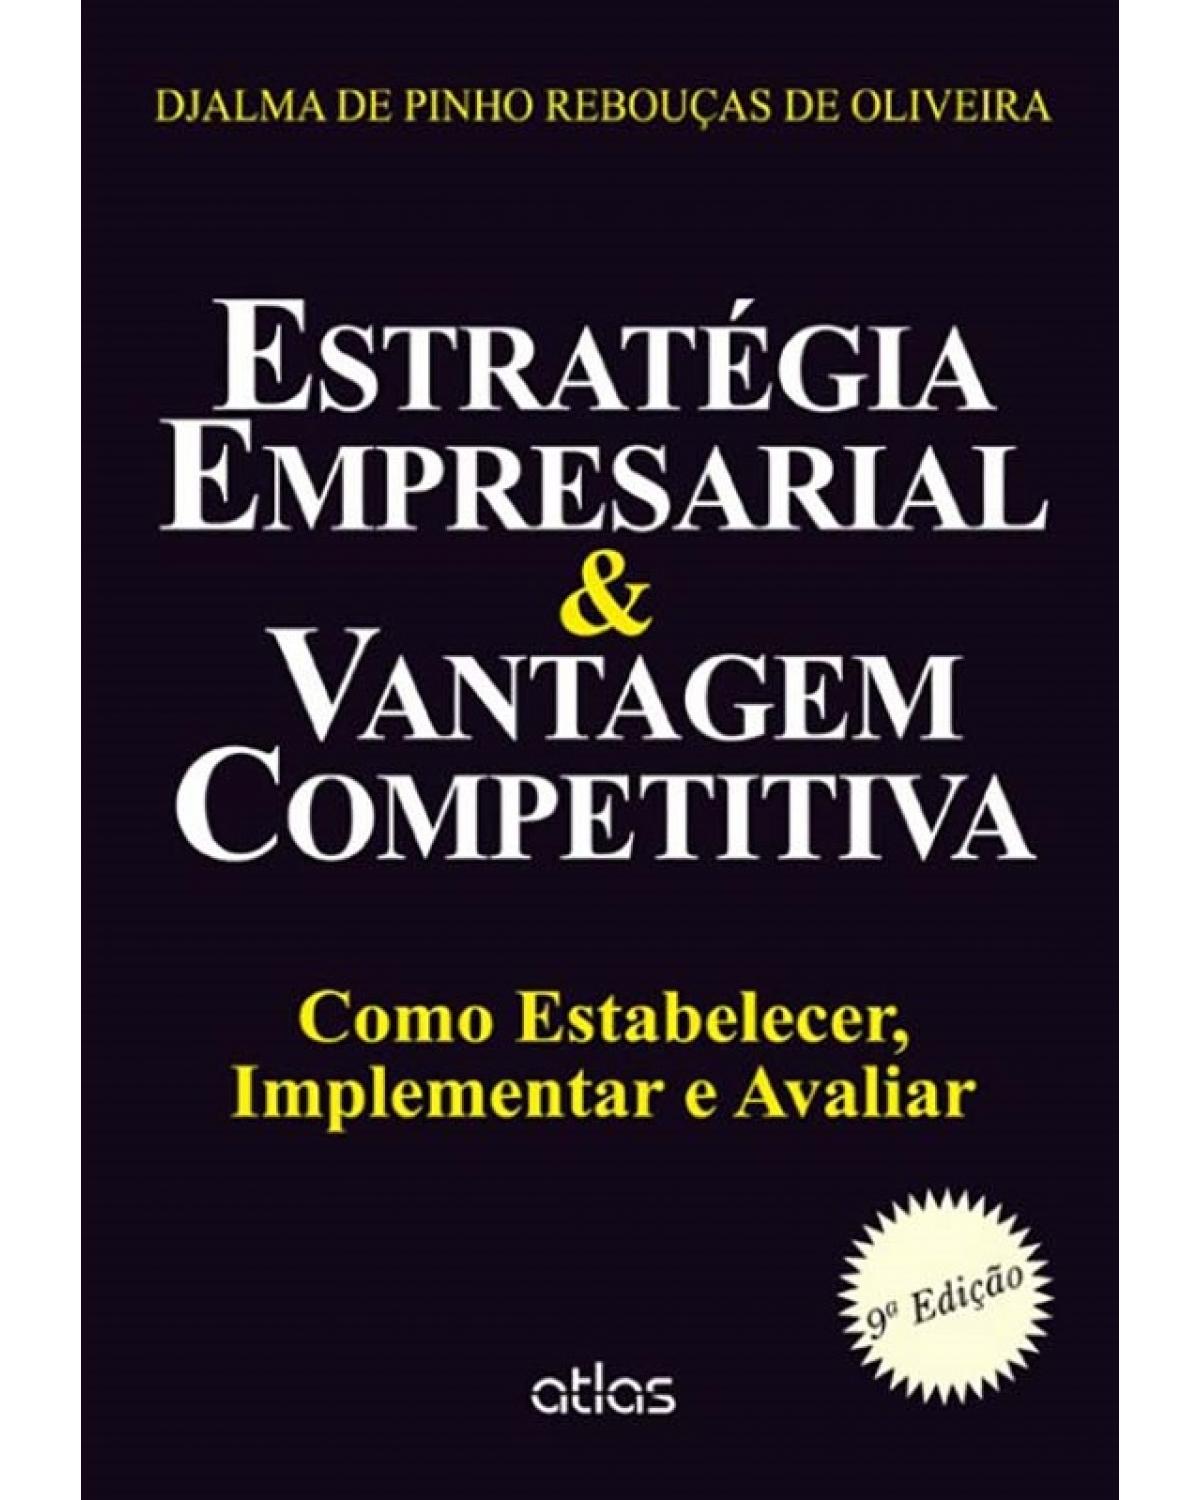 Estratégia empresarial e vantagem competitiva - Como estabelecer, implementar e avaliar - 9ª Edição | 2014